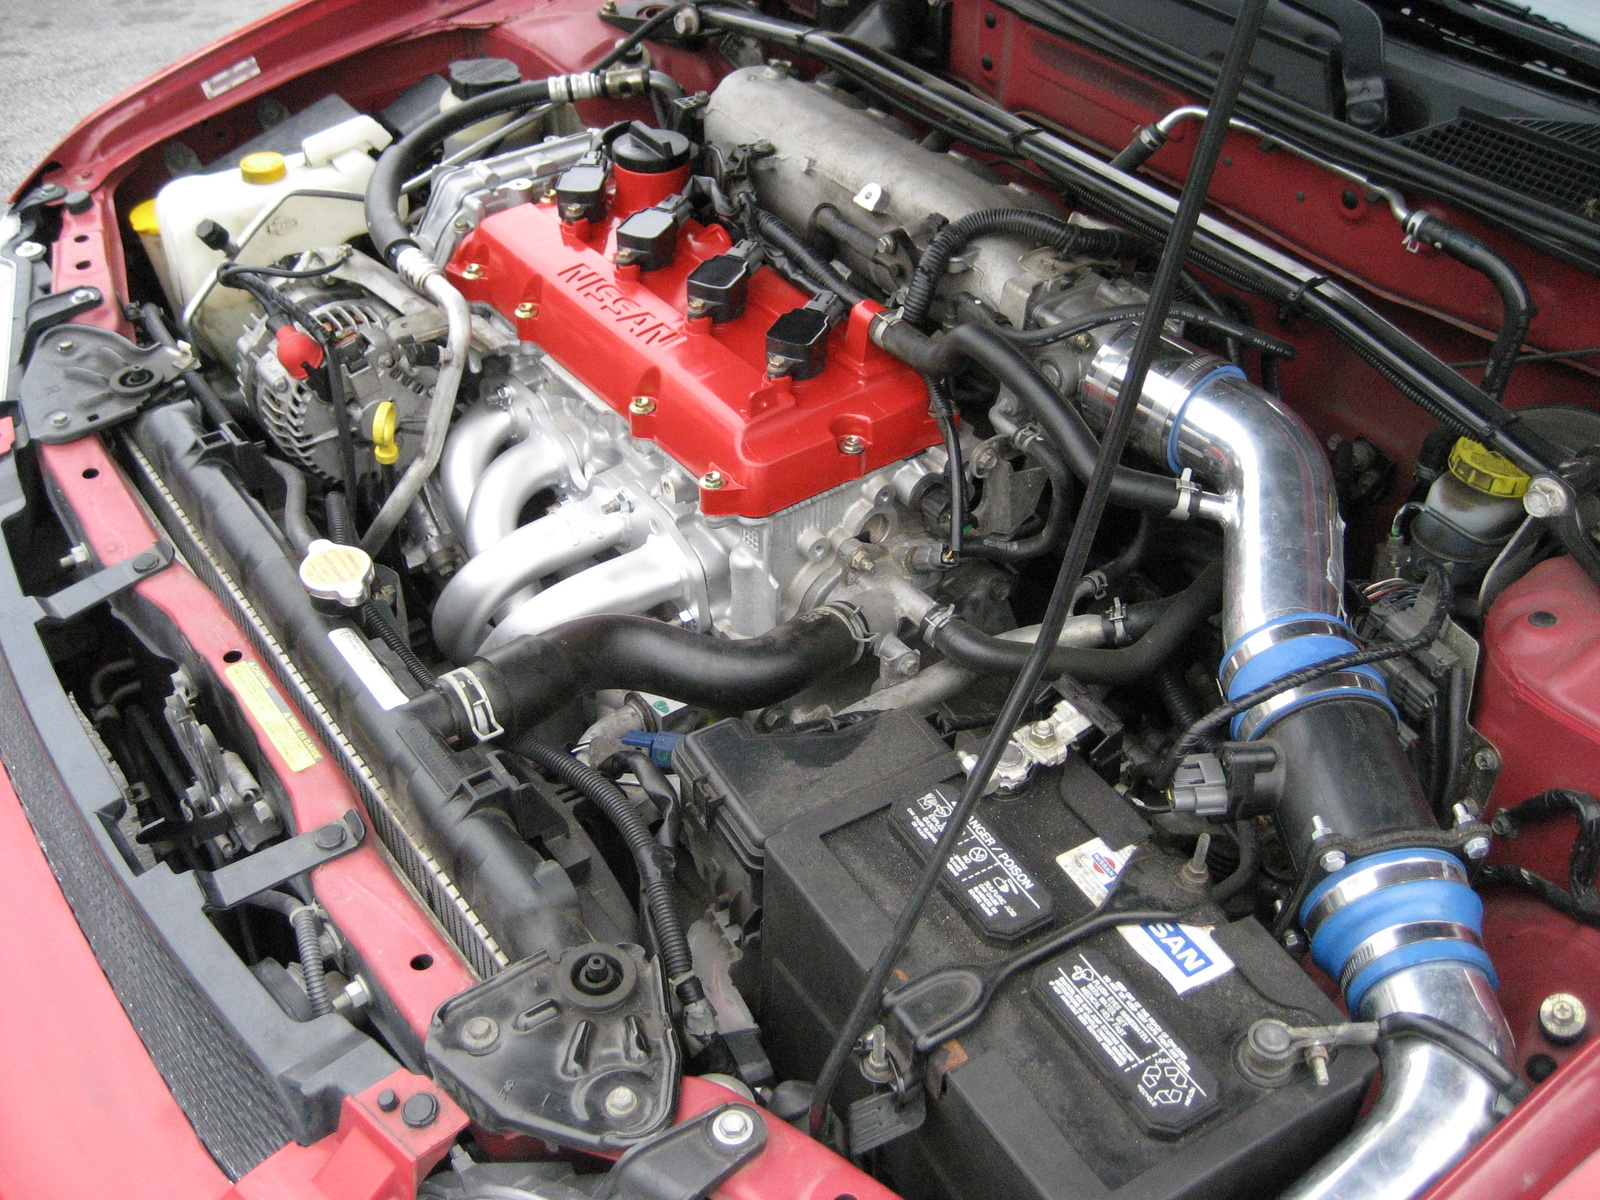 2004 Nissan sentra se-r spec v engine swap #1